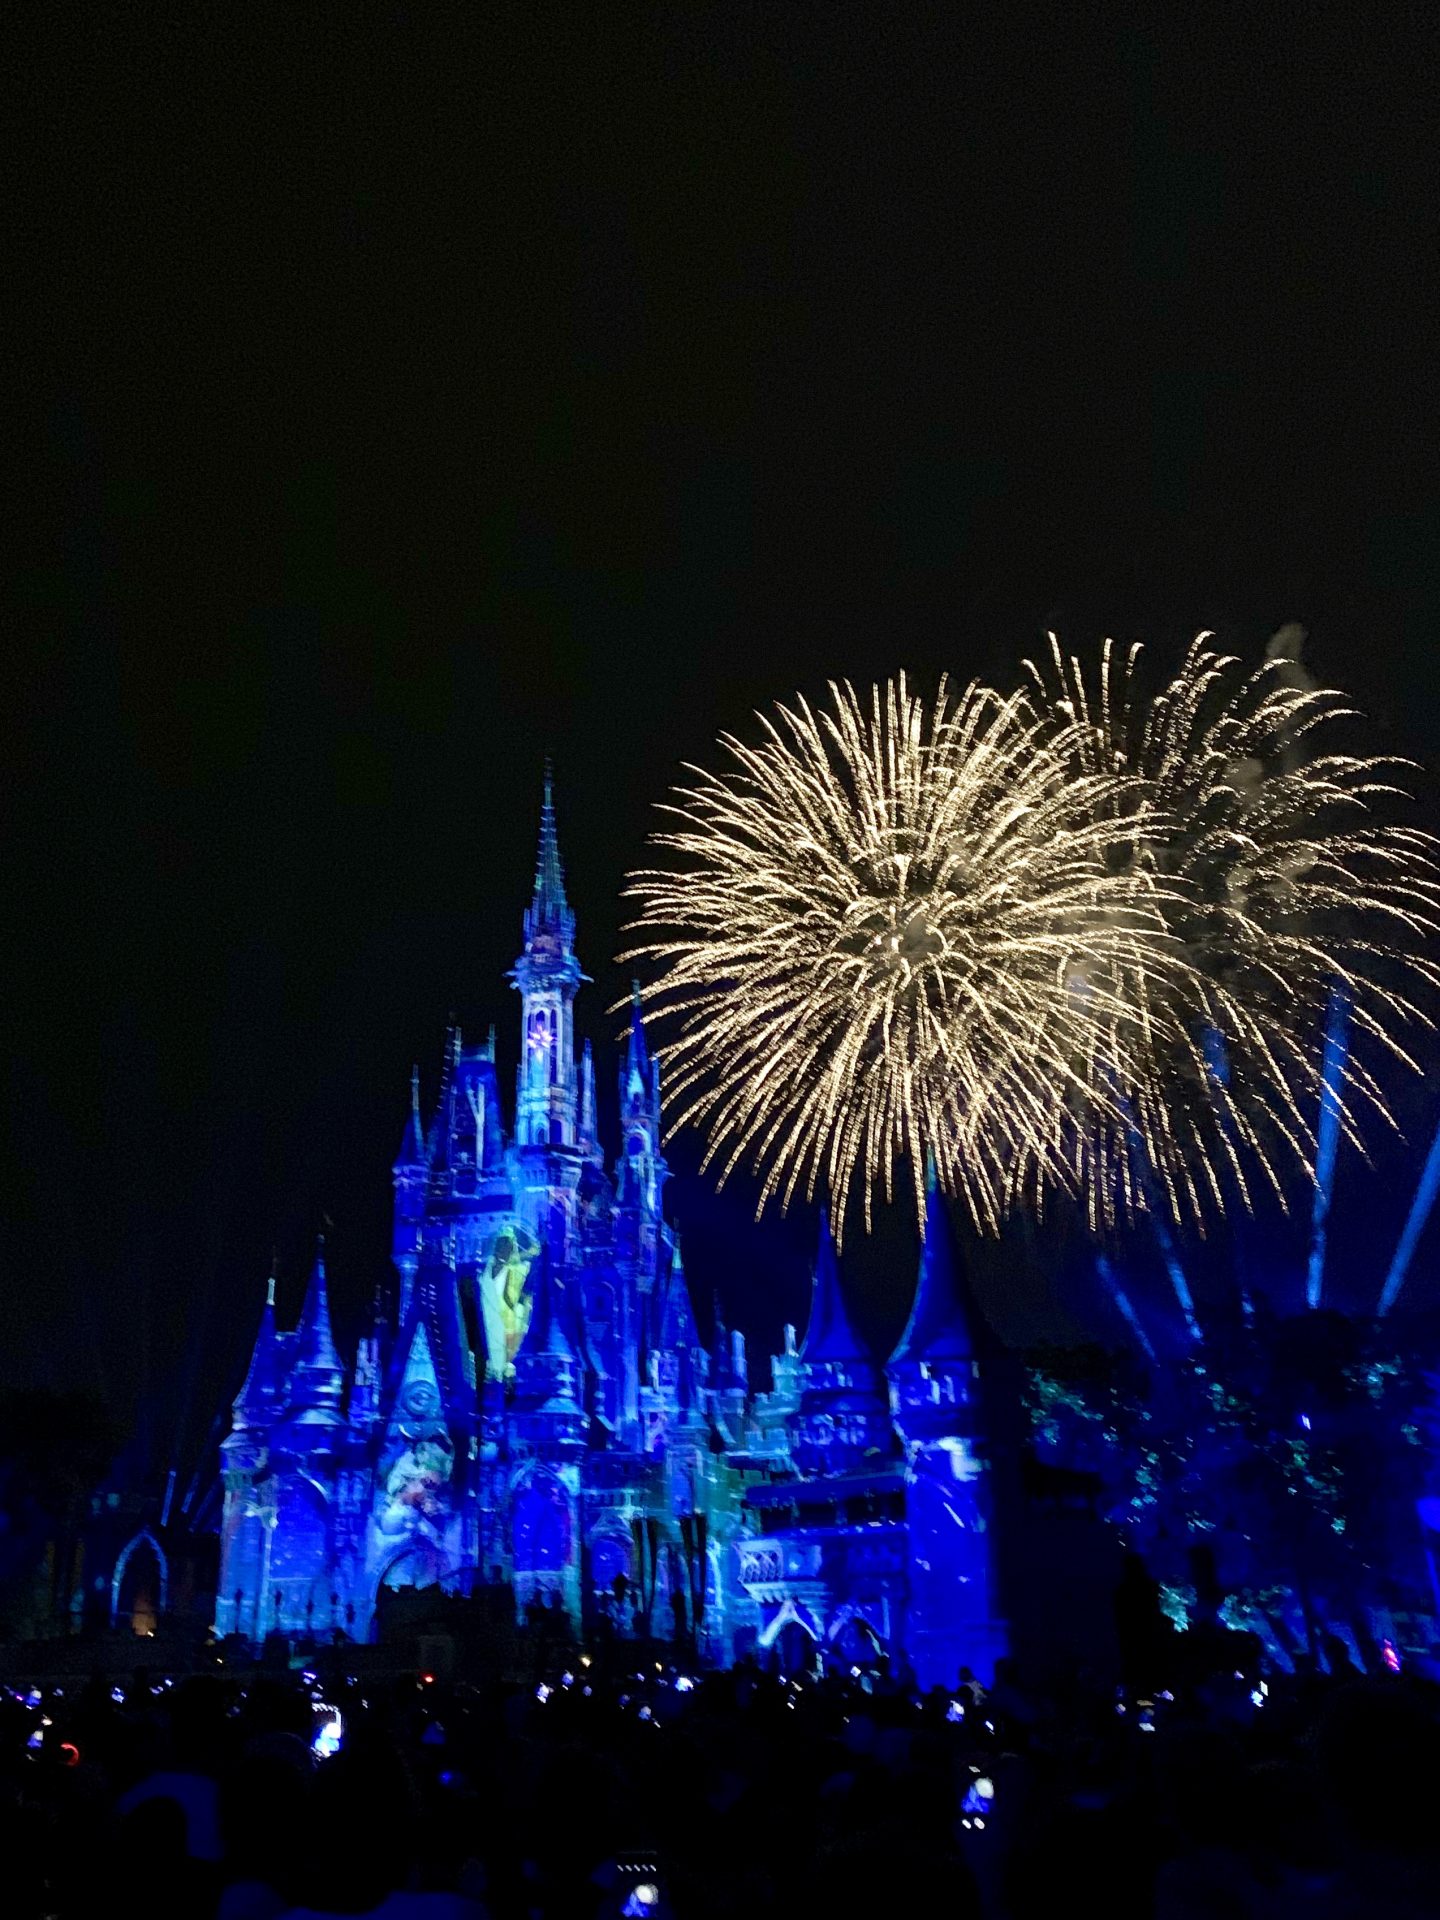 magic kingdom fireworks